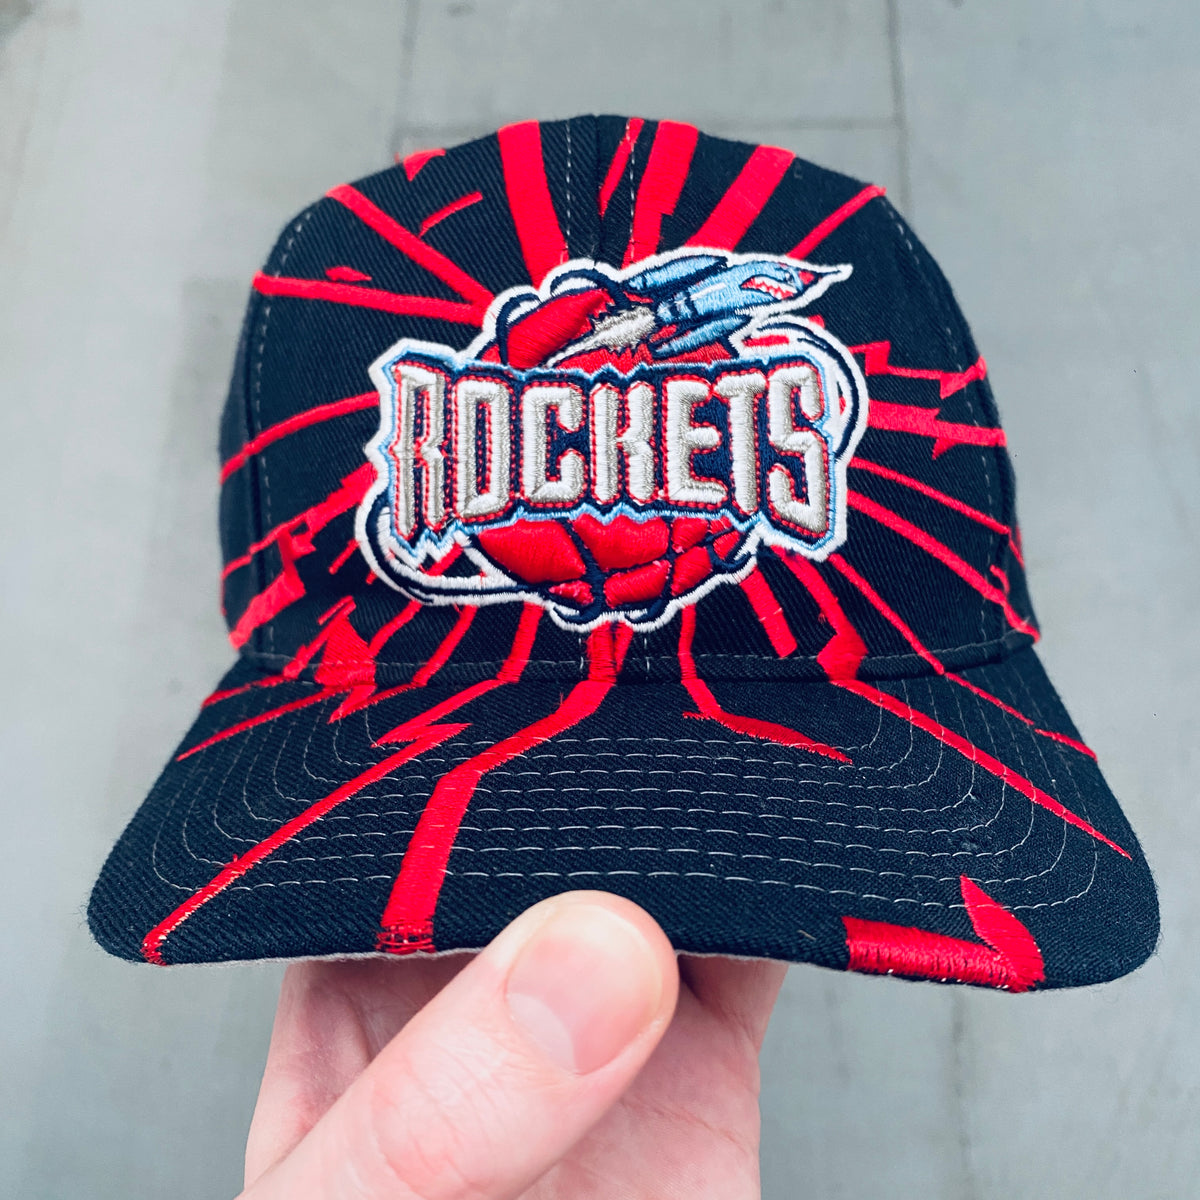 Rockets Vintage Cap 